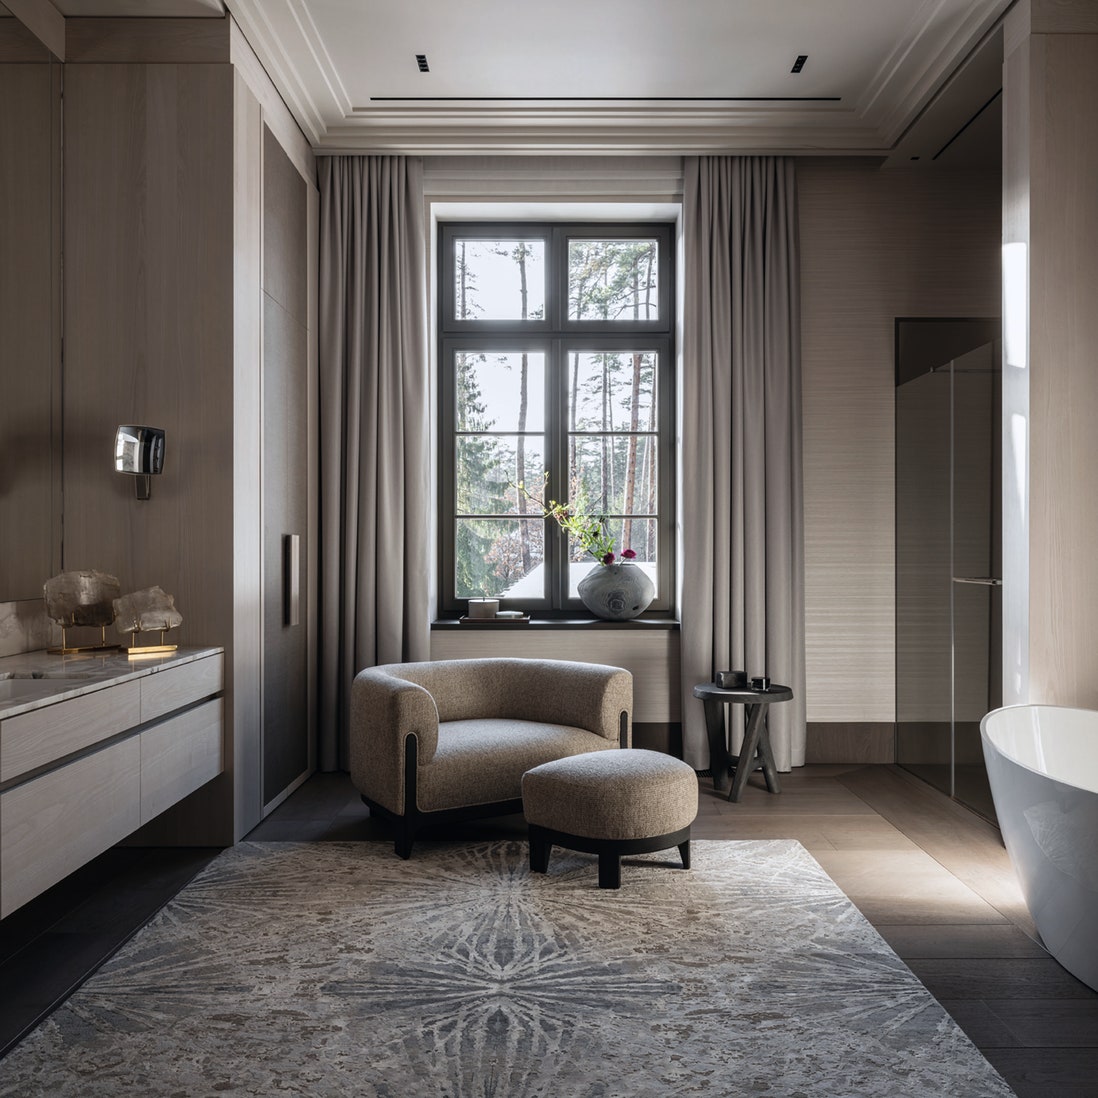 Мастер-сюит: как дизайнеры оформляют приватную зону &- спальню, ванную, гардеробную